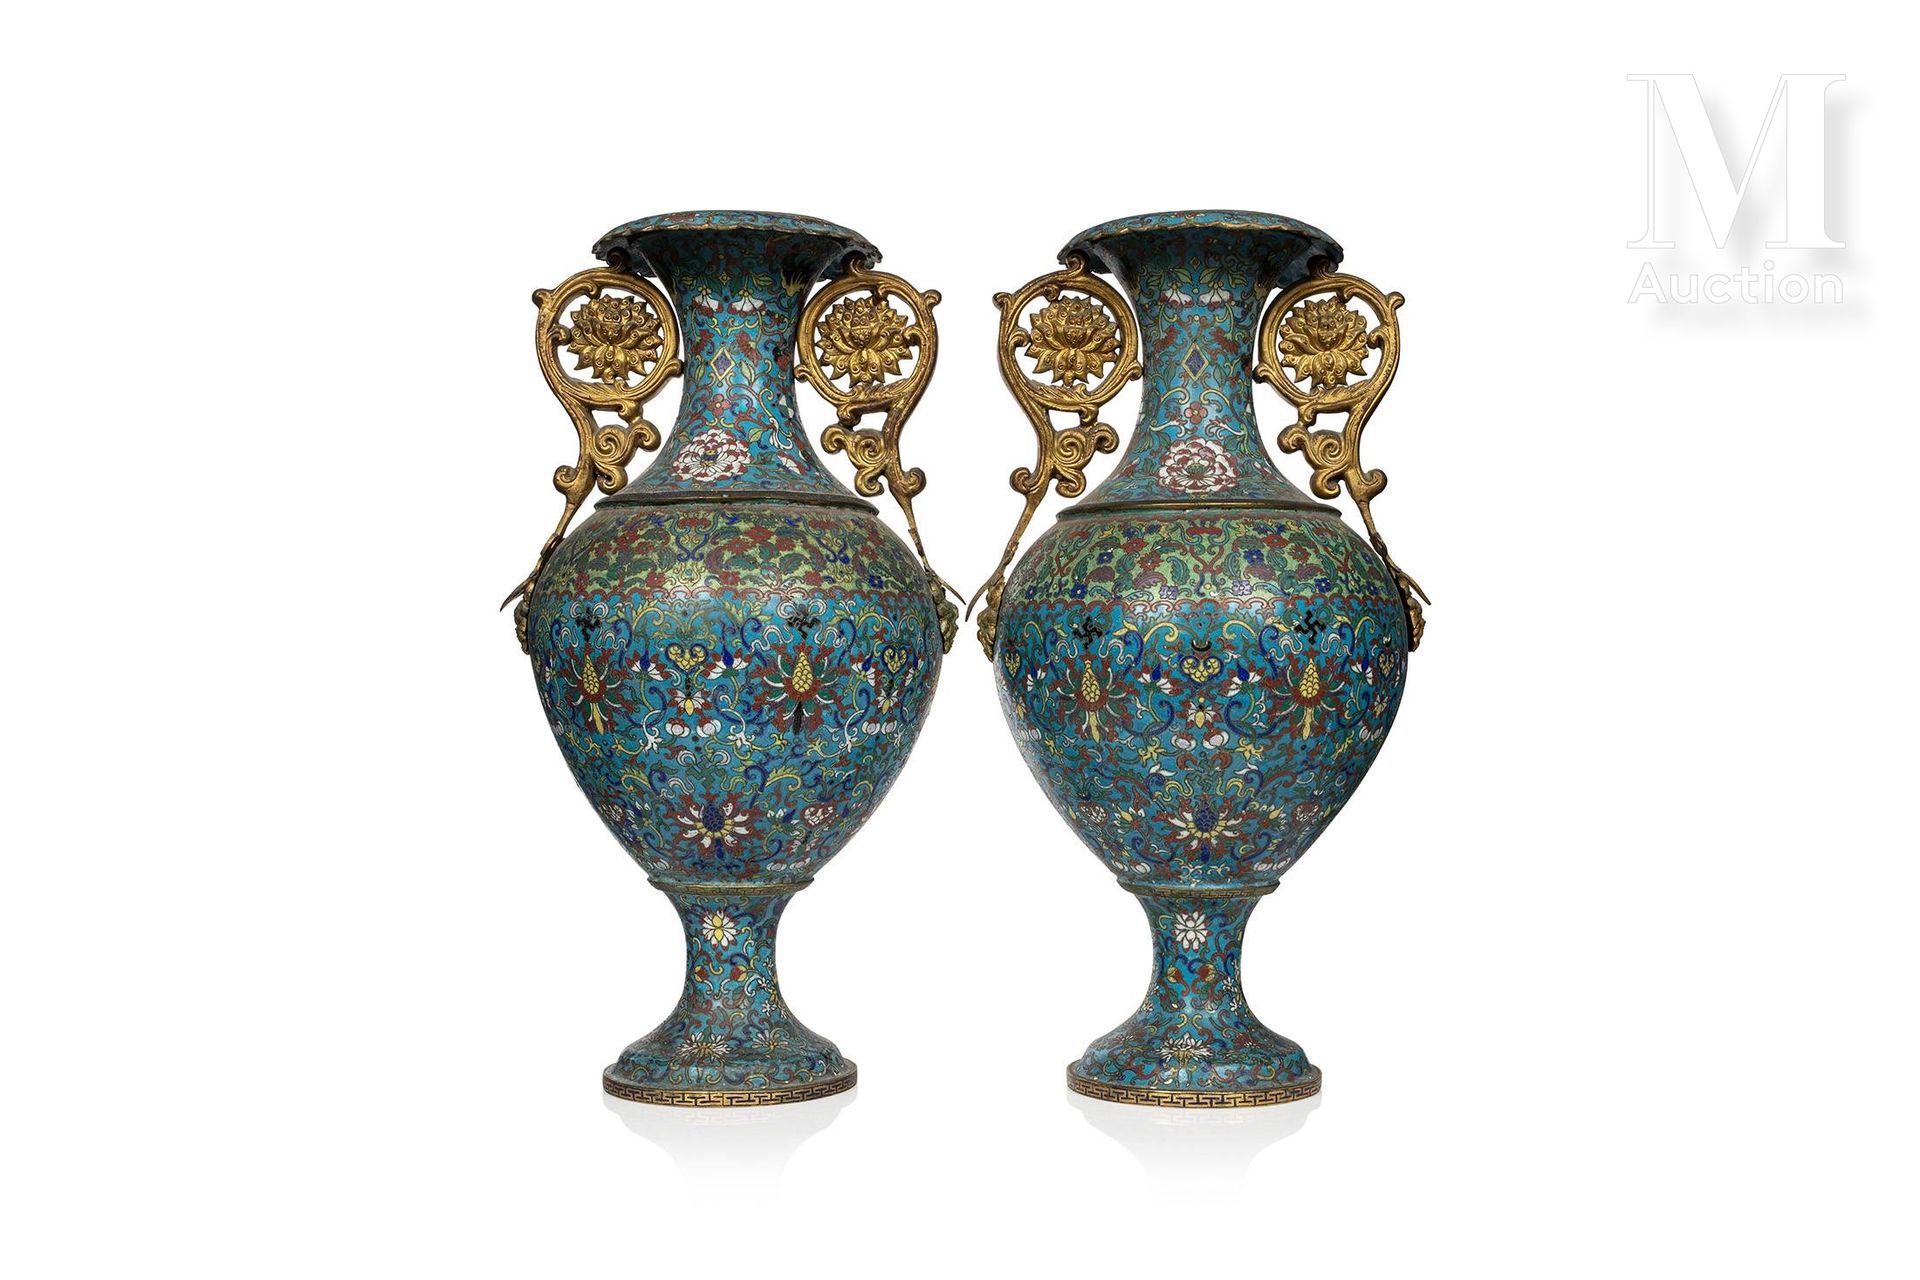 CHINE, XVIIIe SIÈCLE 
一对优雅的鎏金铜和景泰蓝花瓶

喇叭形的脚主持一个弧形的身体，在叶状的颈部上升，最后喇叭形翻起，整体以蓝底多色珐琅的&hellip;